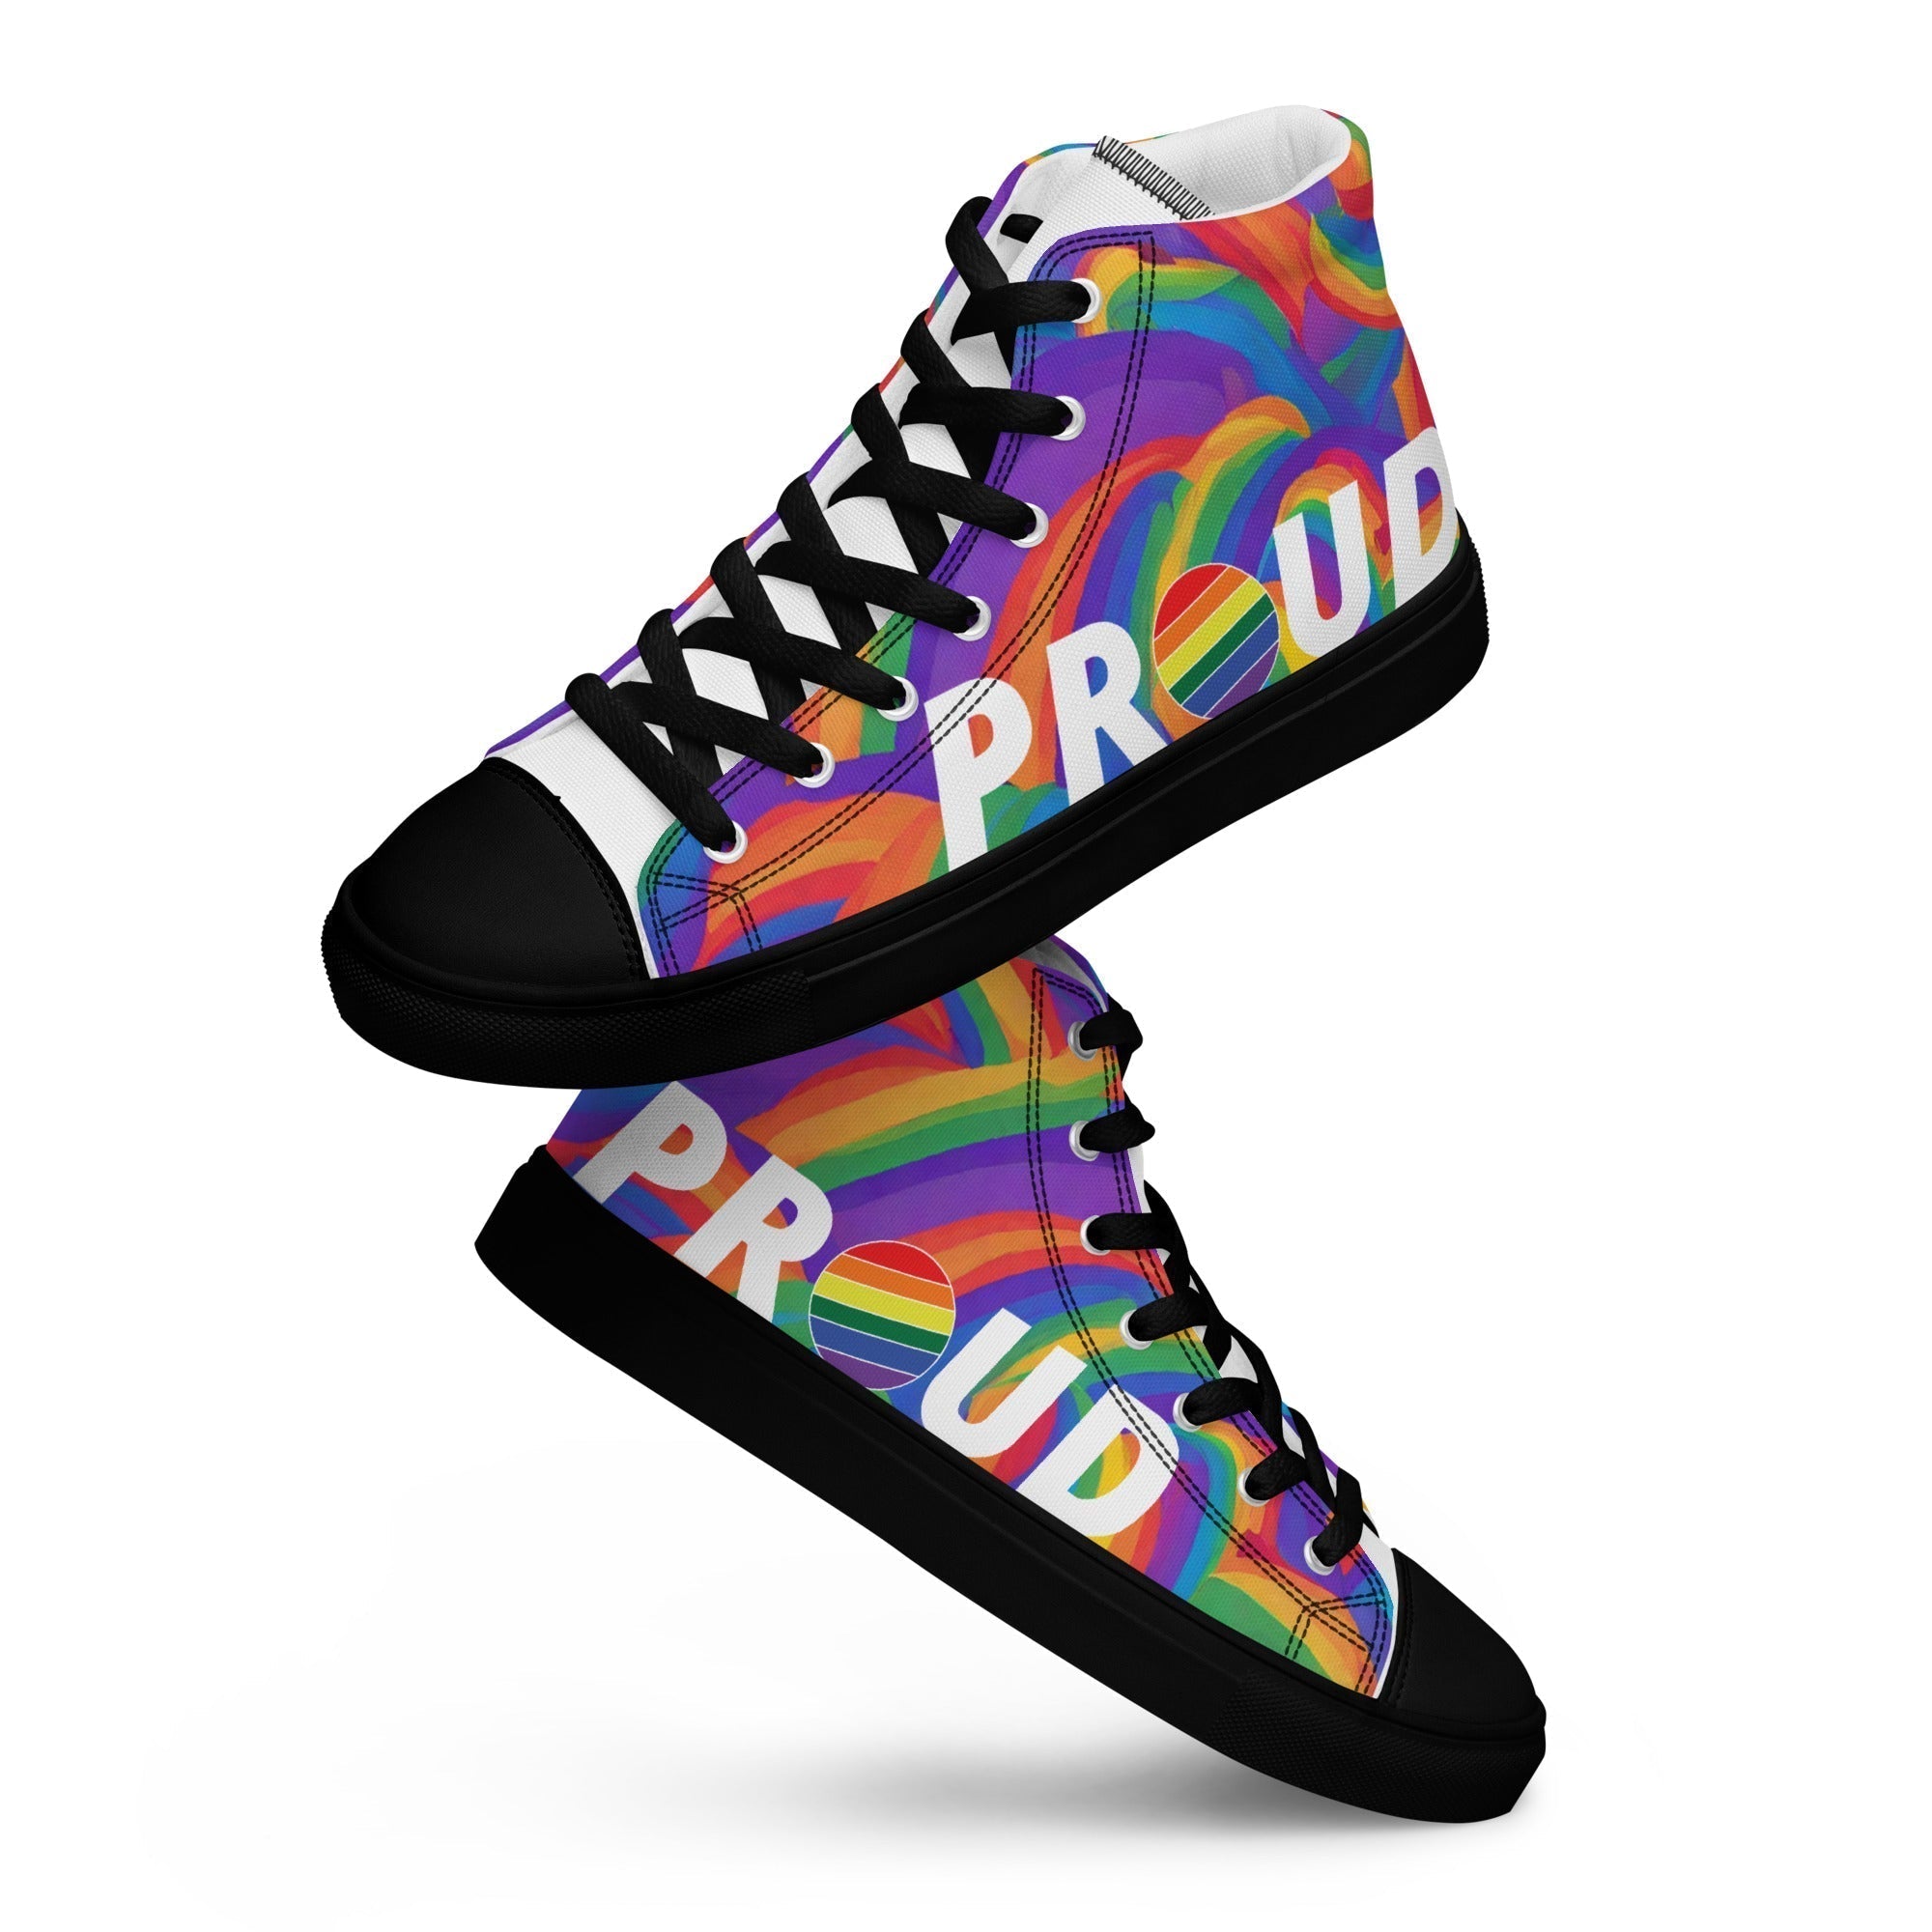 PROUD Pride shoes